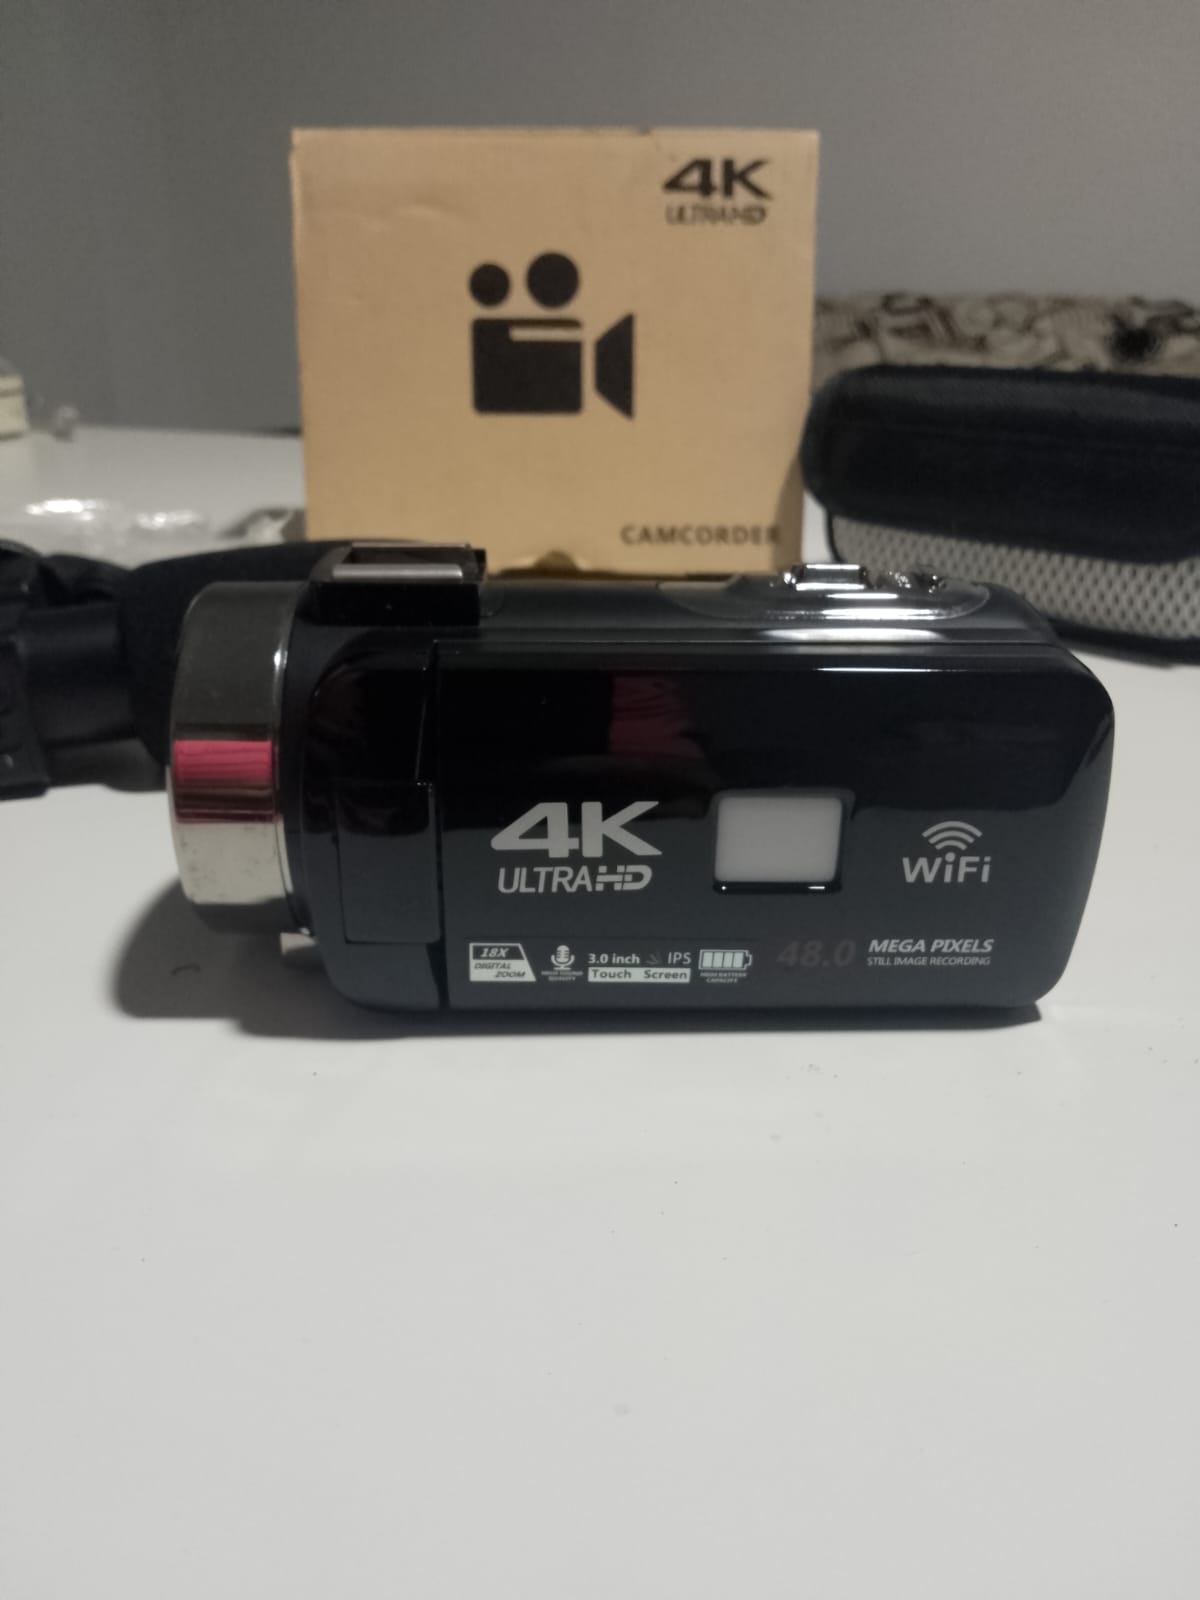 Camara DVC 4k Ultra HD como nueva en su caja Foto 7220340-1.jpg